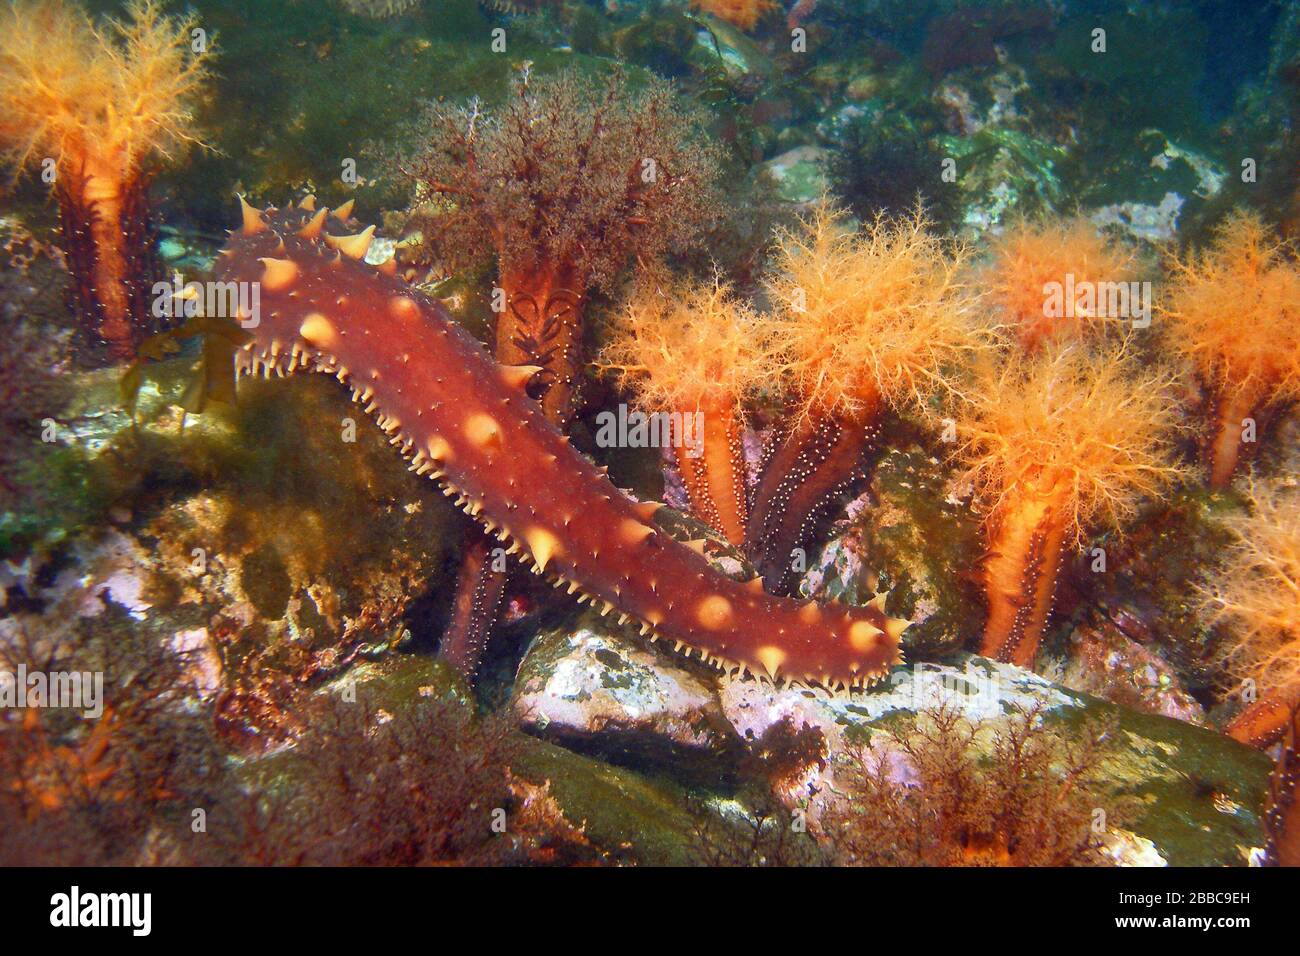 Concombre géant de mer, Parastichopus californicus, concombres de mer d'aviron orange, Cucumaria miniata Banque D'Images